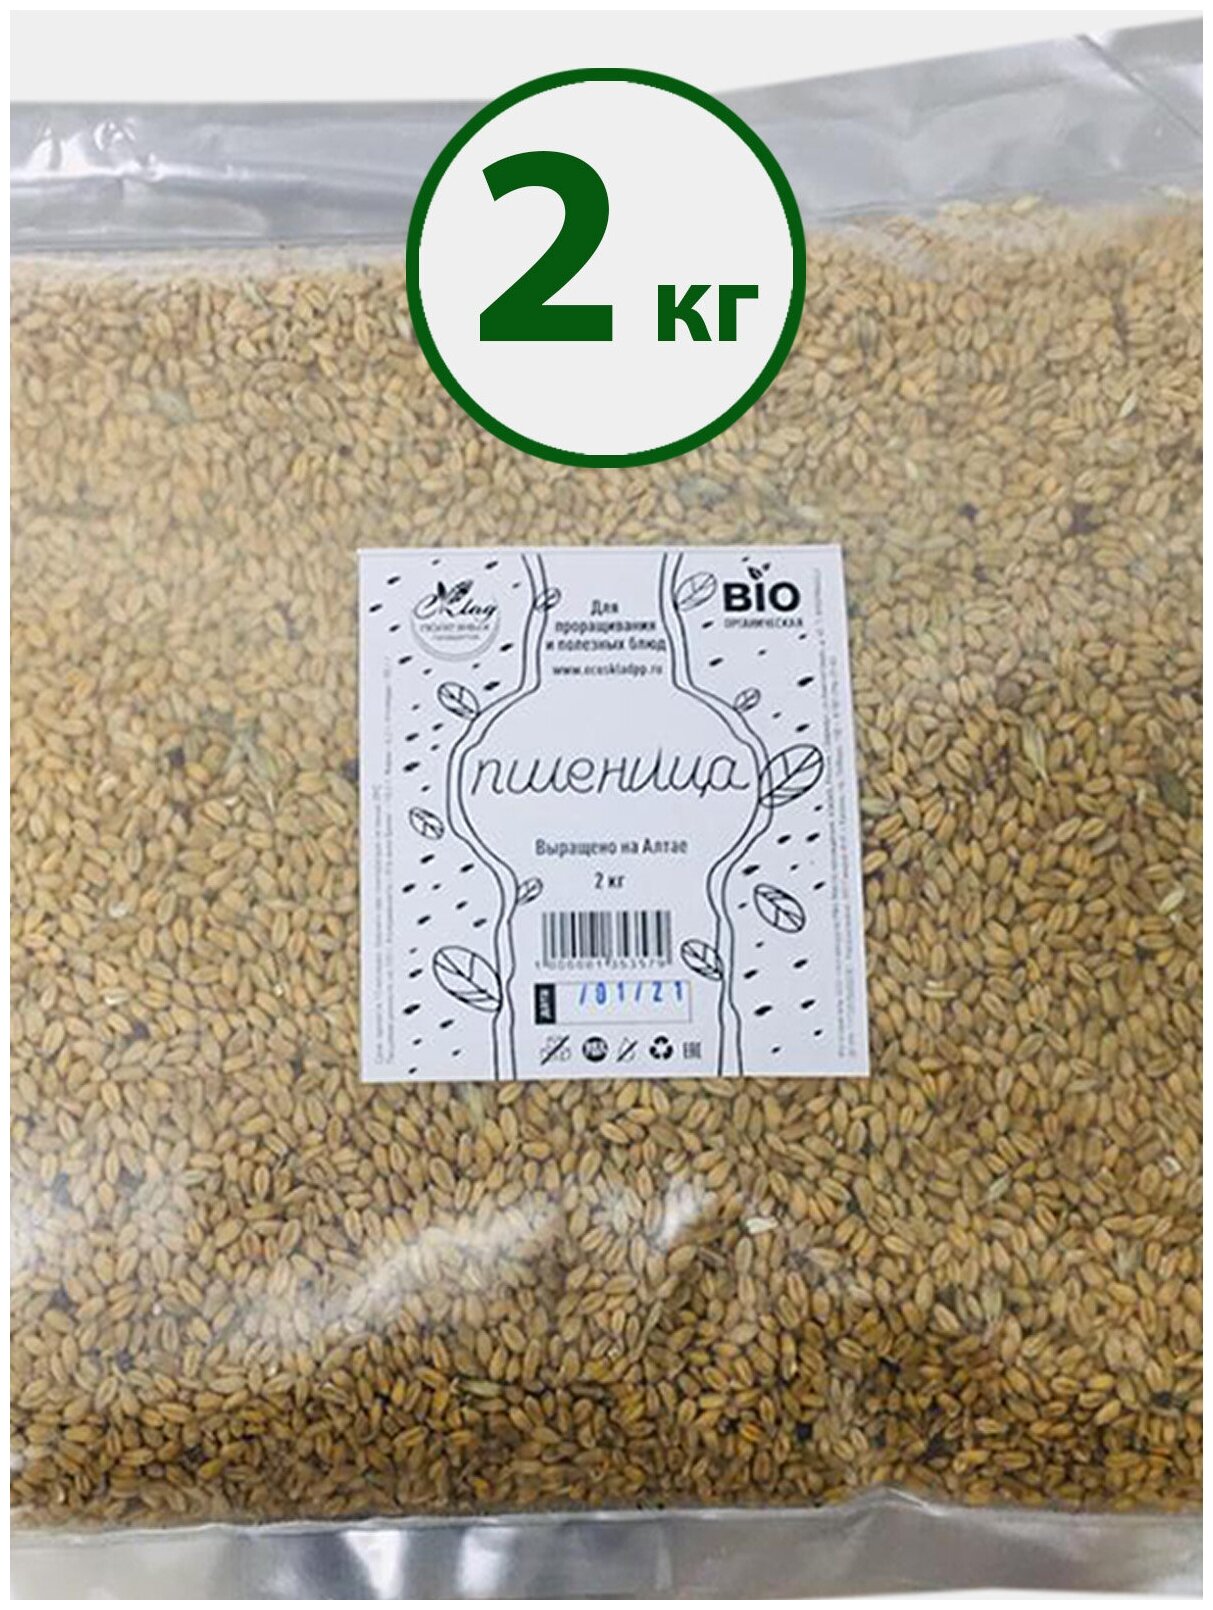 Пшеница Семена БИО для проращивания, 2 кг. биоорганическая, Пшеница для проращивания, Пшеница для микрозелени, проростки микрозелень, Семена пшеницы